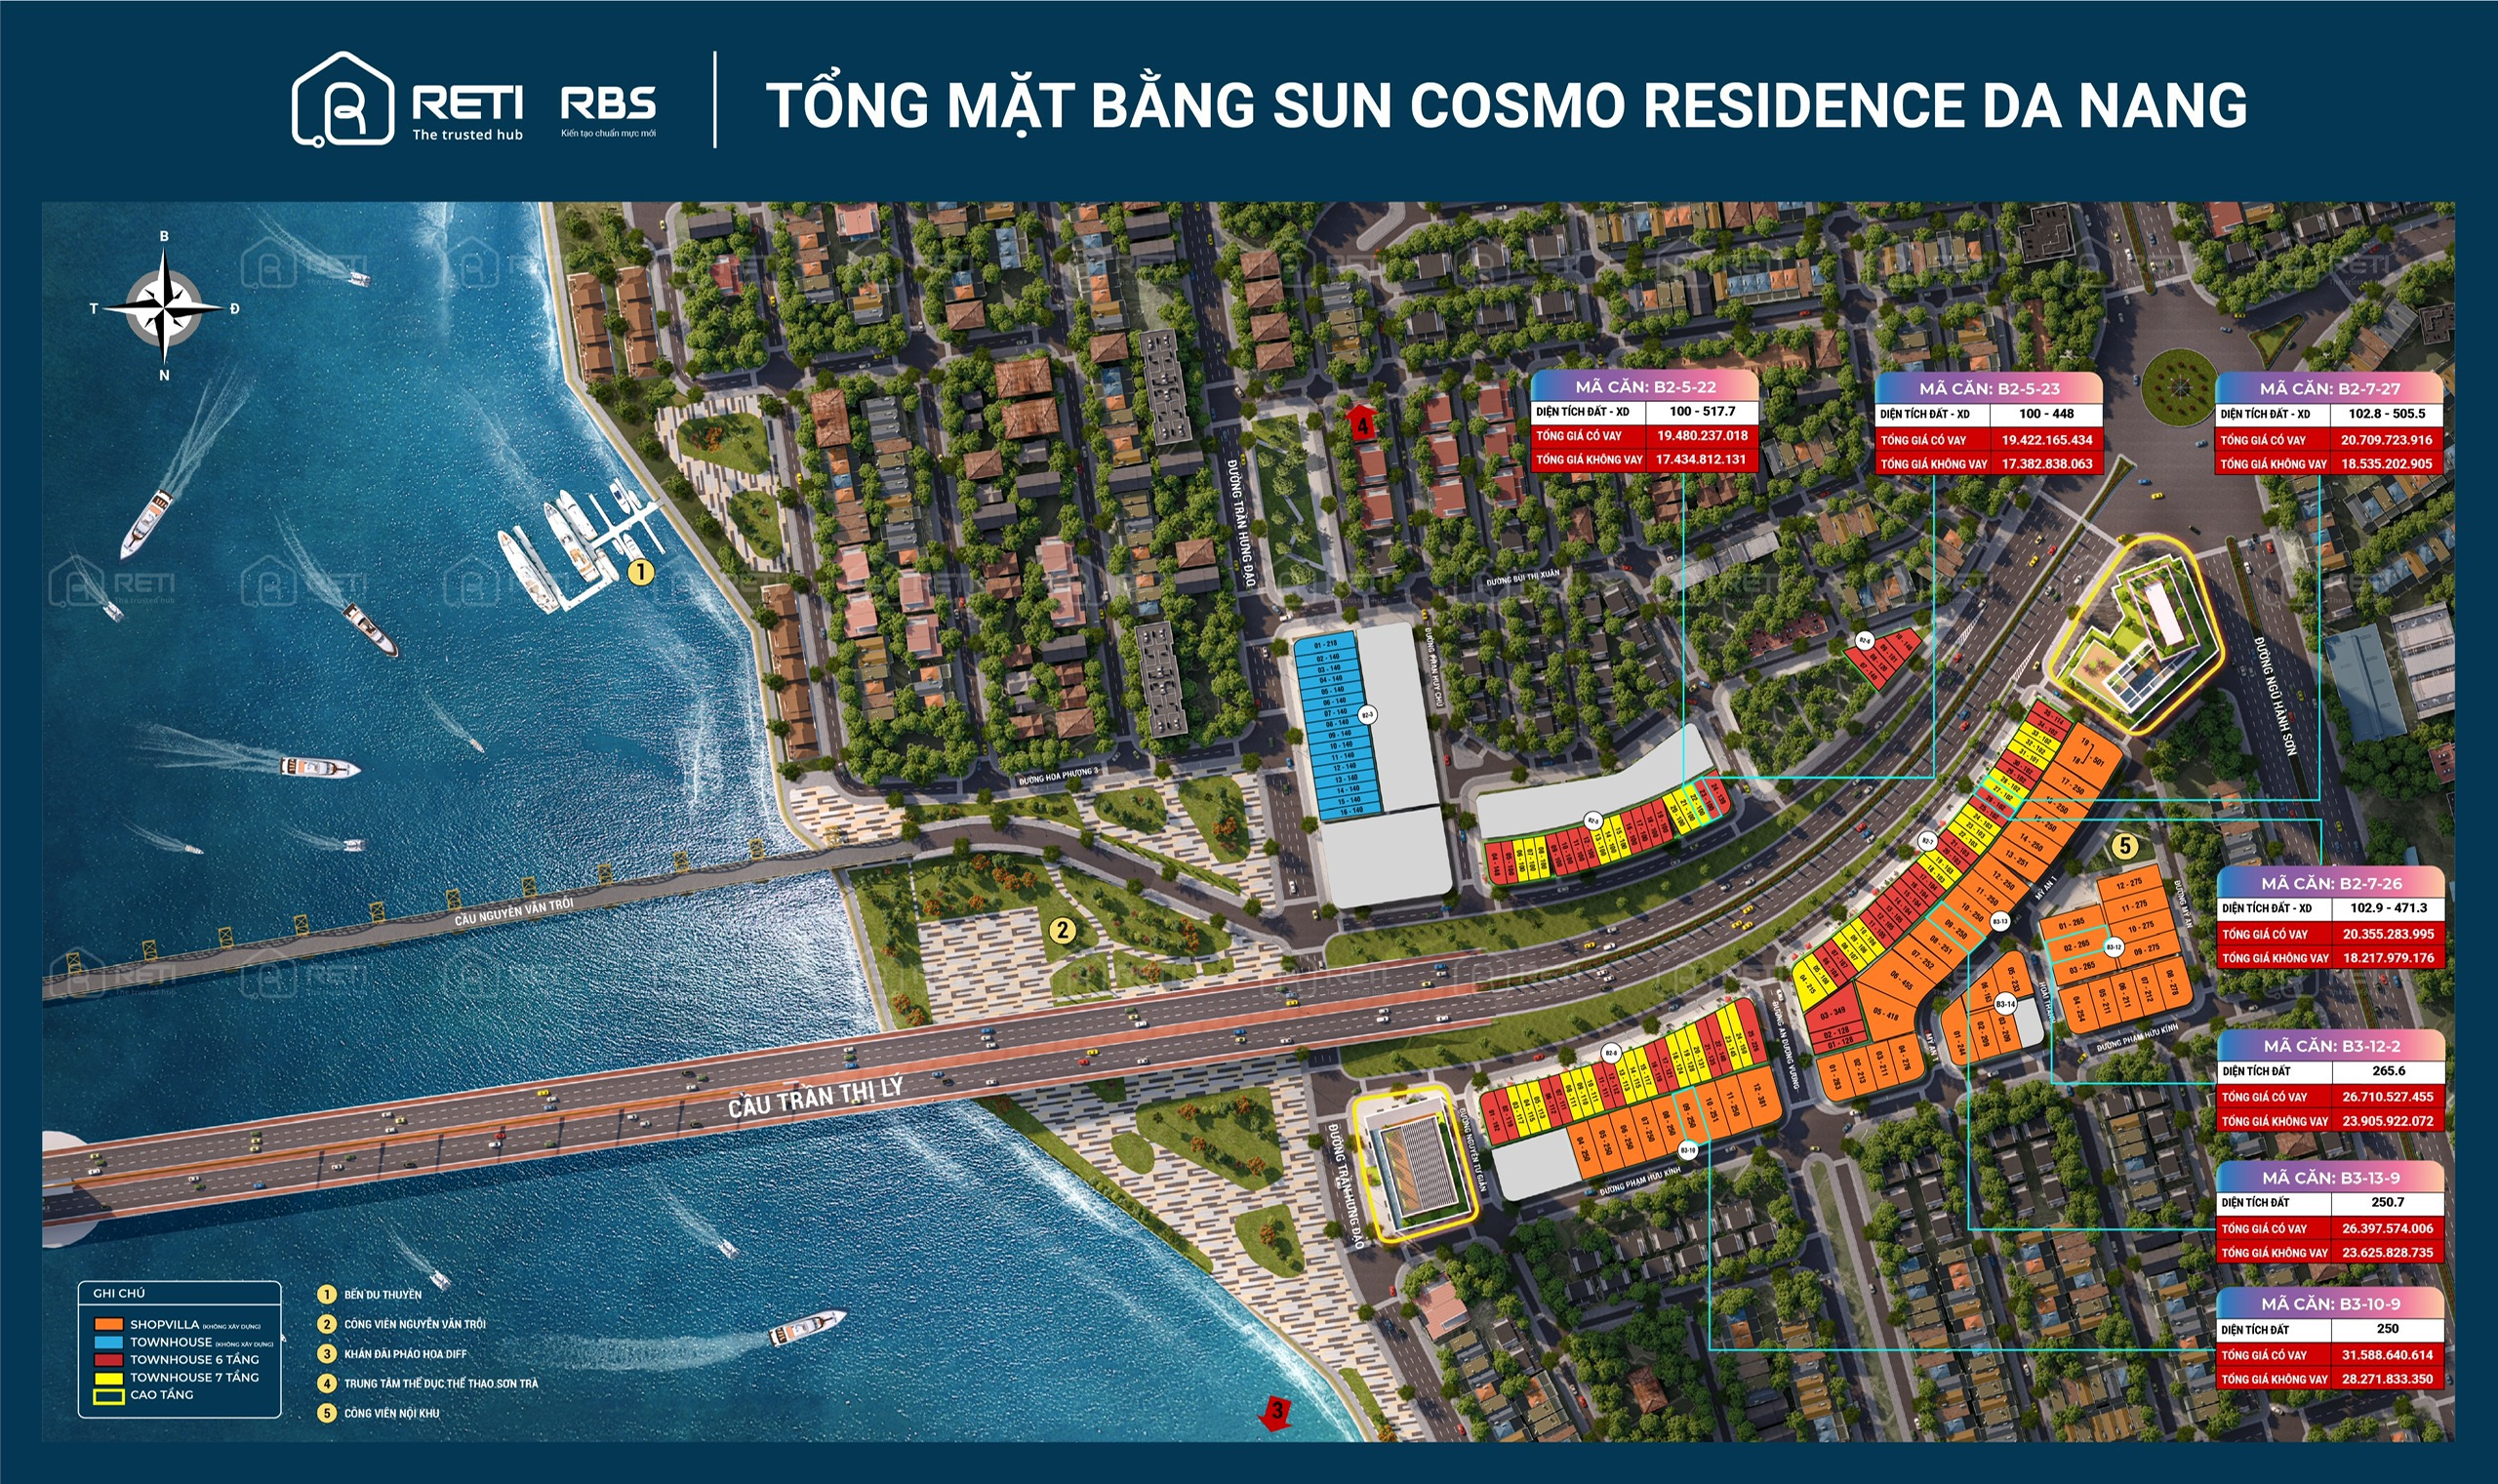 Sun Cosmo Residence Da Nang: Dự án căn hộ - biệt thự - nhà phố tại Đà Nẵng 1